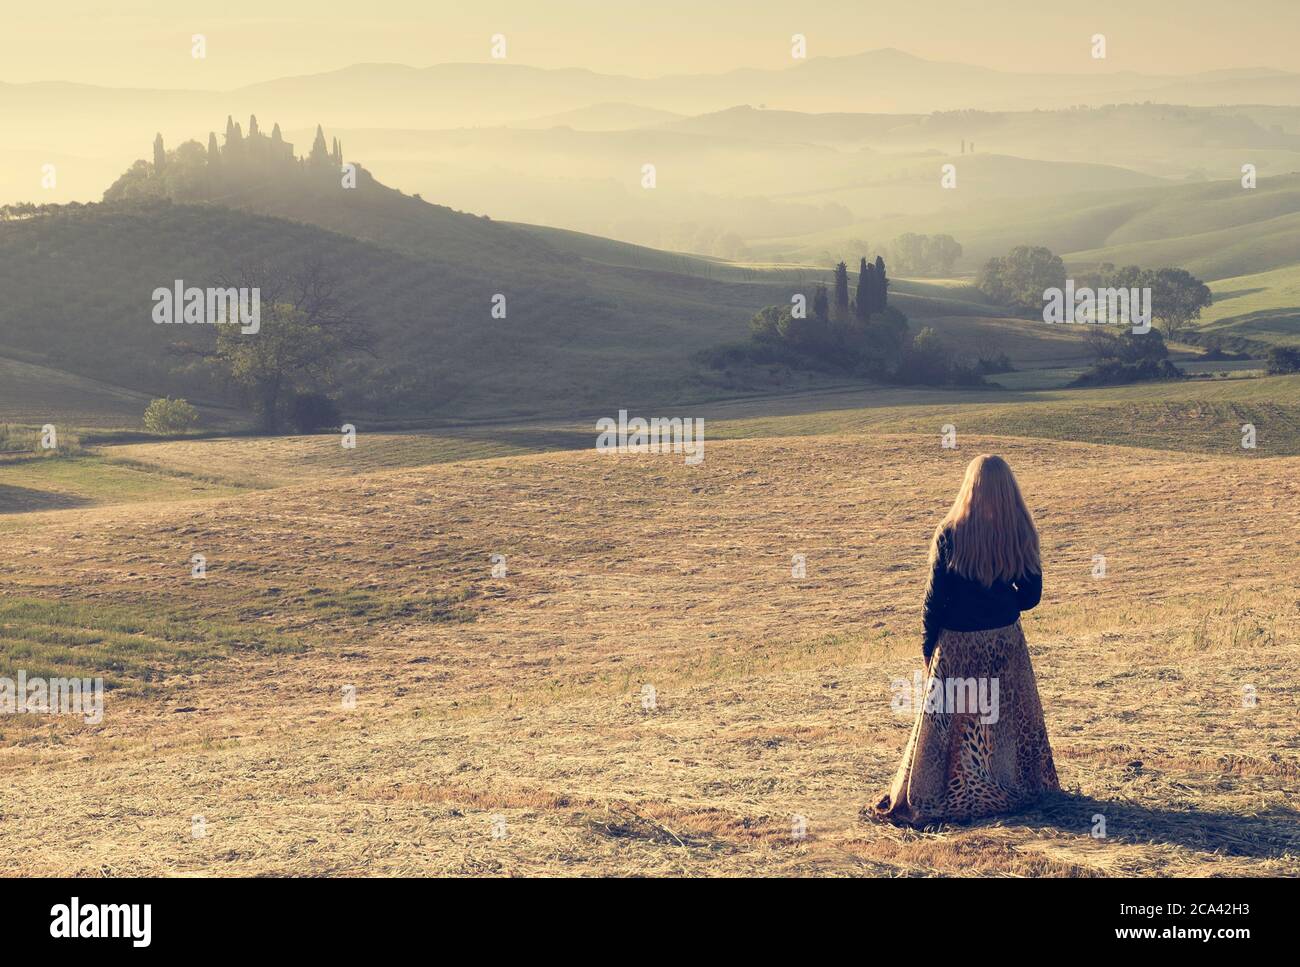 Podere Belvedere, Orcia Valley, Siena district, Toscane, Italie, Europe. Une femme blonde avec une longue robe admire les collines au lever du soleil Banque D'Images